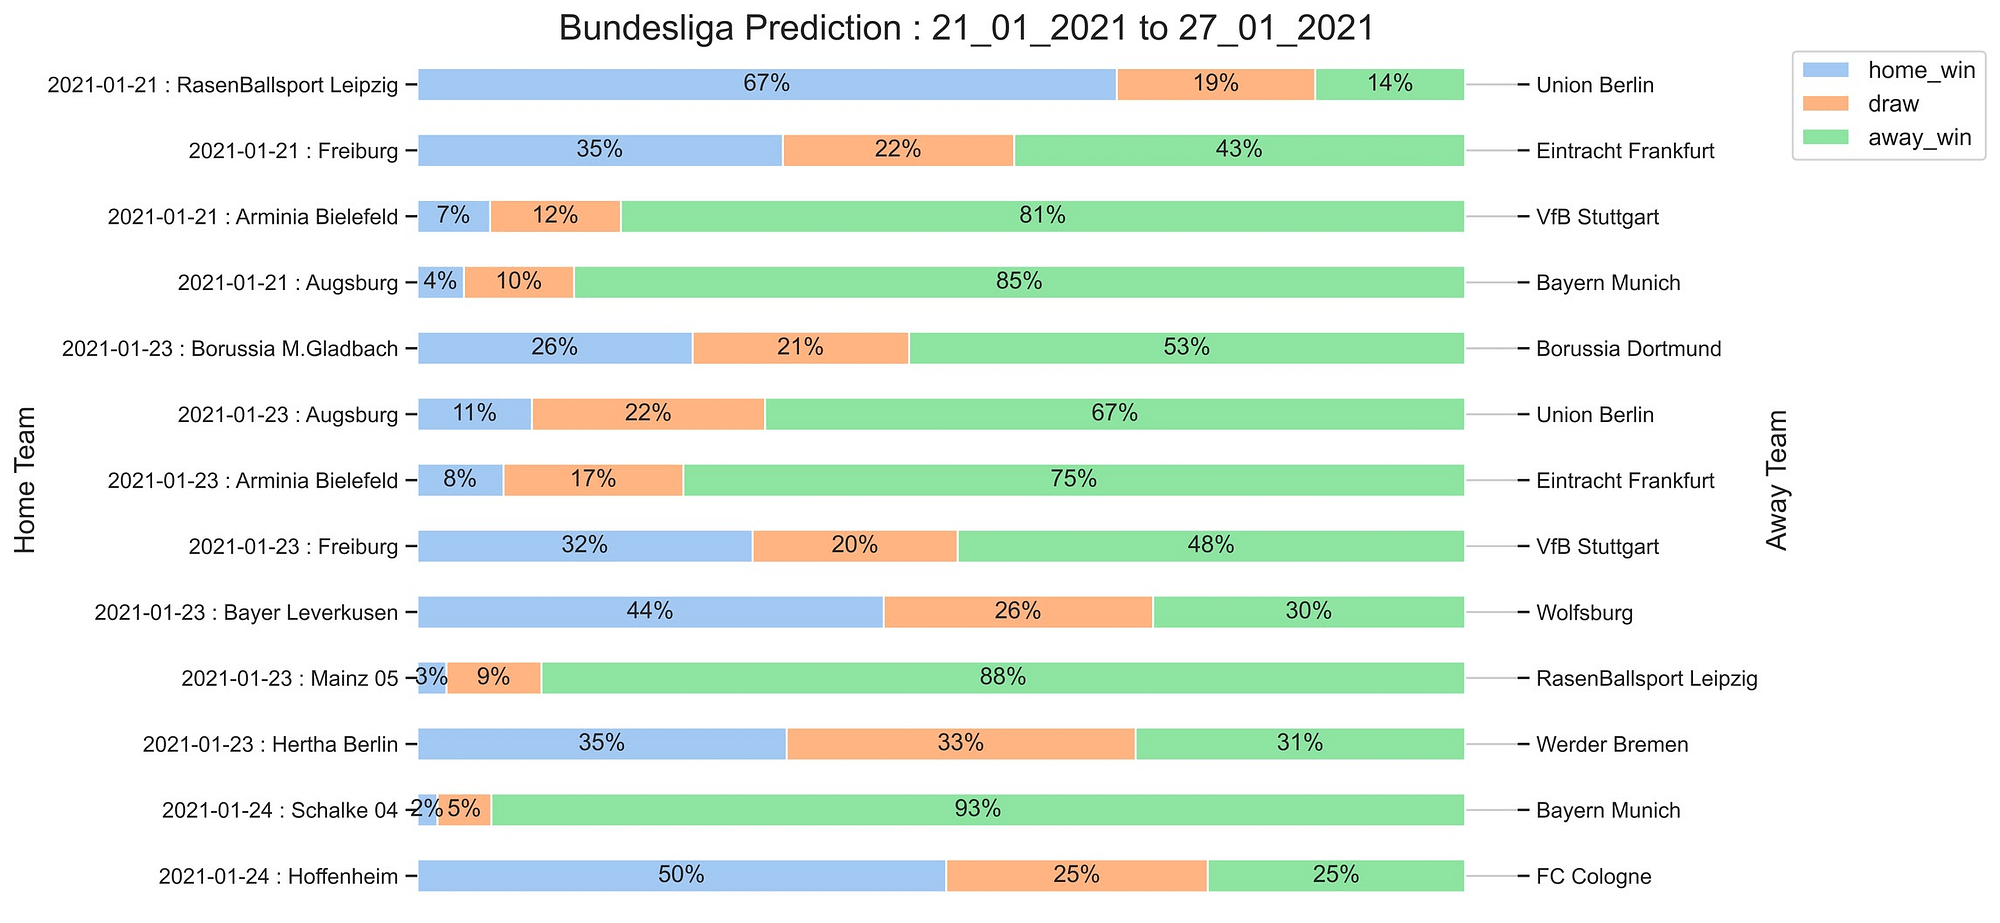 Bundesliga_Prediction 21_01_2021